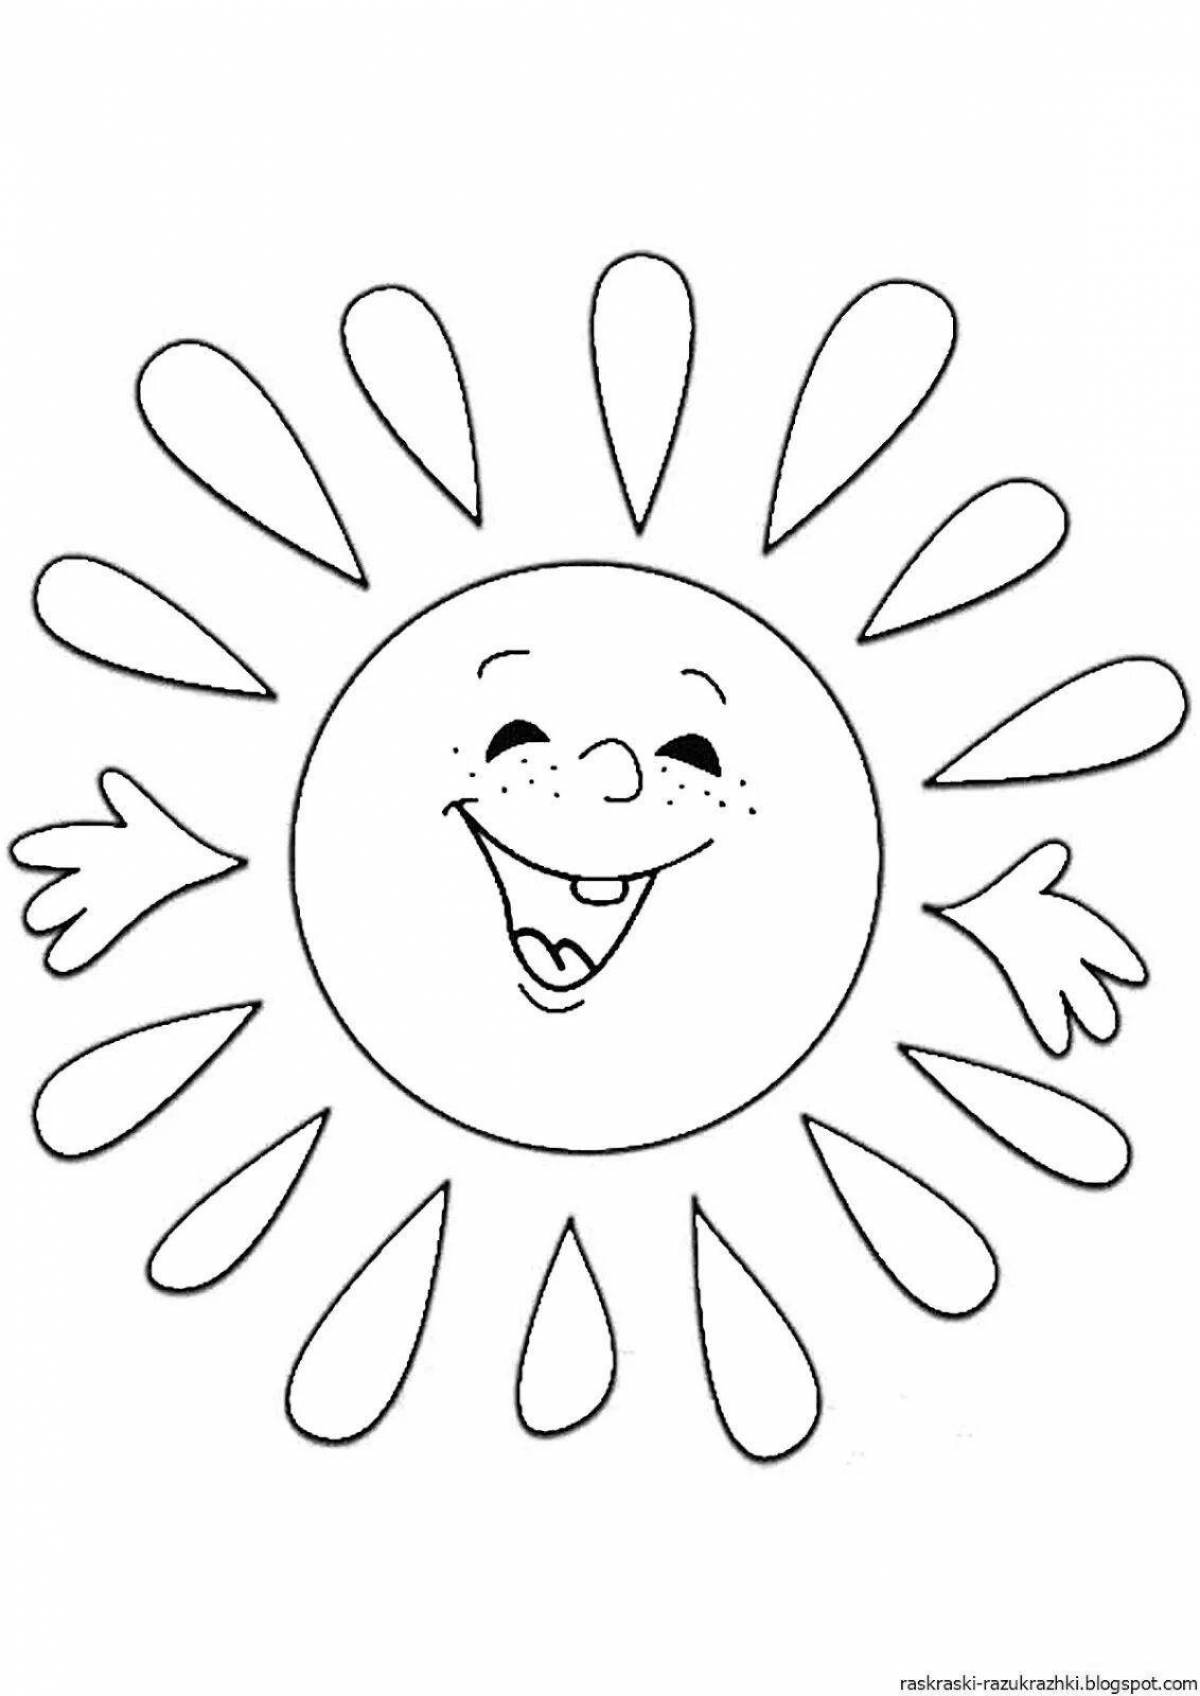 Лучистая раскраска солнце для детей 3-4 лет